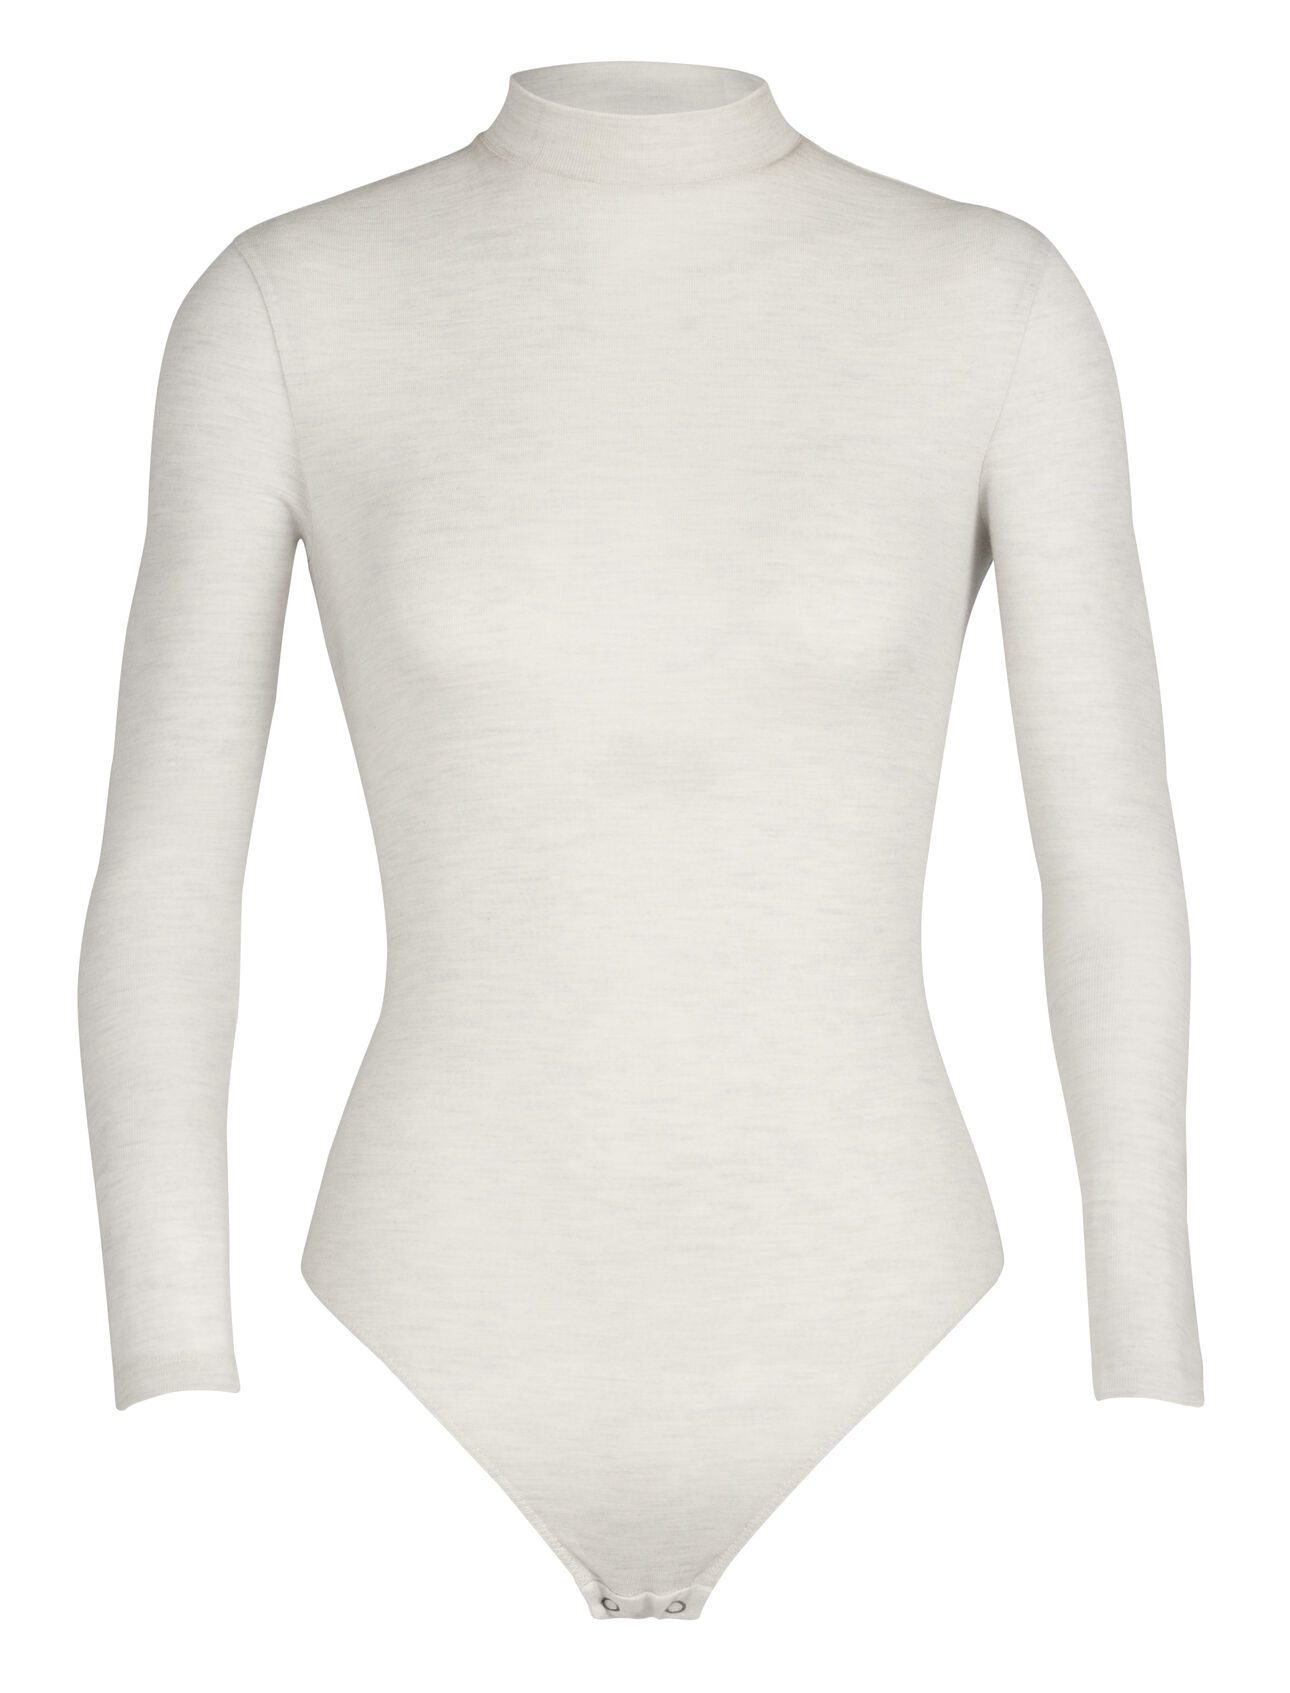 Merino Rib High Neck Langarm-Body  Damen Ein vielseitiger Bodysuit, der als eigenständiges Oberteil oder als Base Layer getragen werden kann, der Merino Rib High Neck Langarm-Body besteht aus 100% Merinowolle, die weich, atmungsaktiv und auf natürliche Weise geruchsabweisend ist.